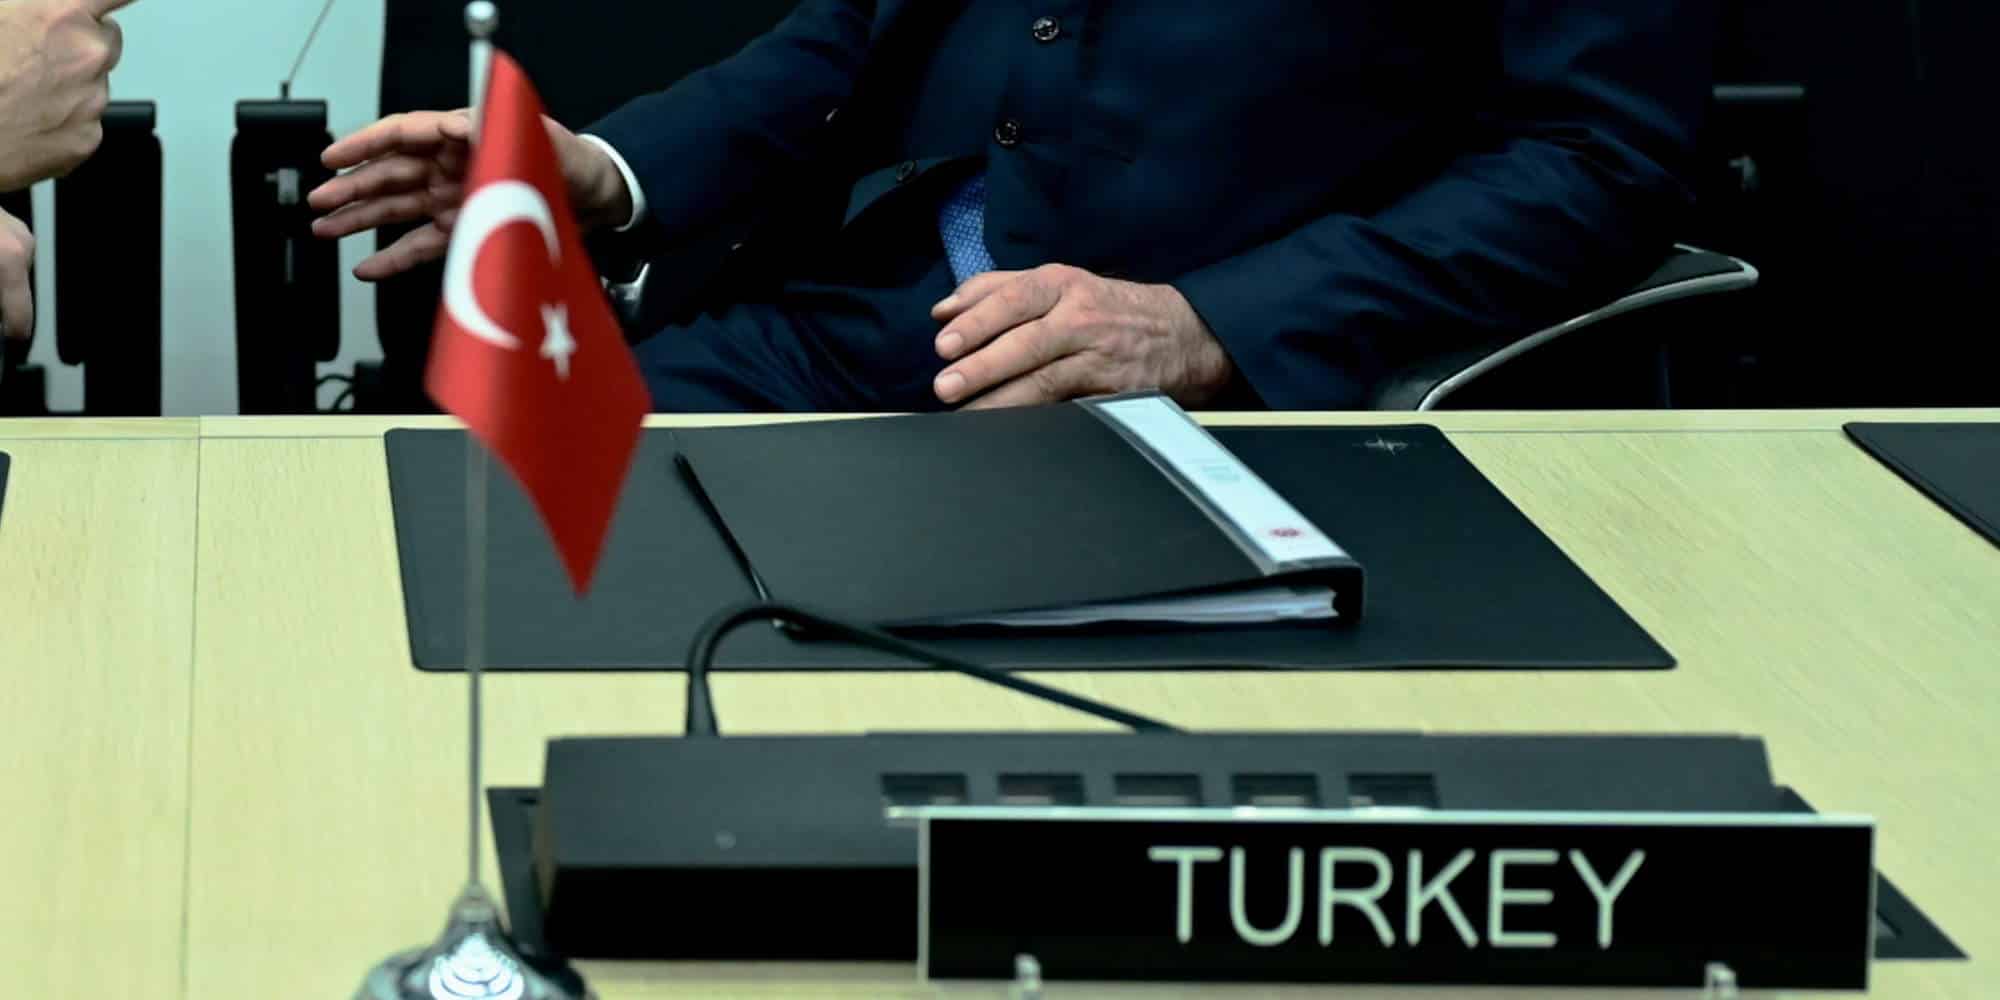 Σημαιάκι στα χρώματα της Τουρκίας και ταμπελάκι που αναγράφει Τουρκία